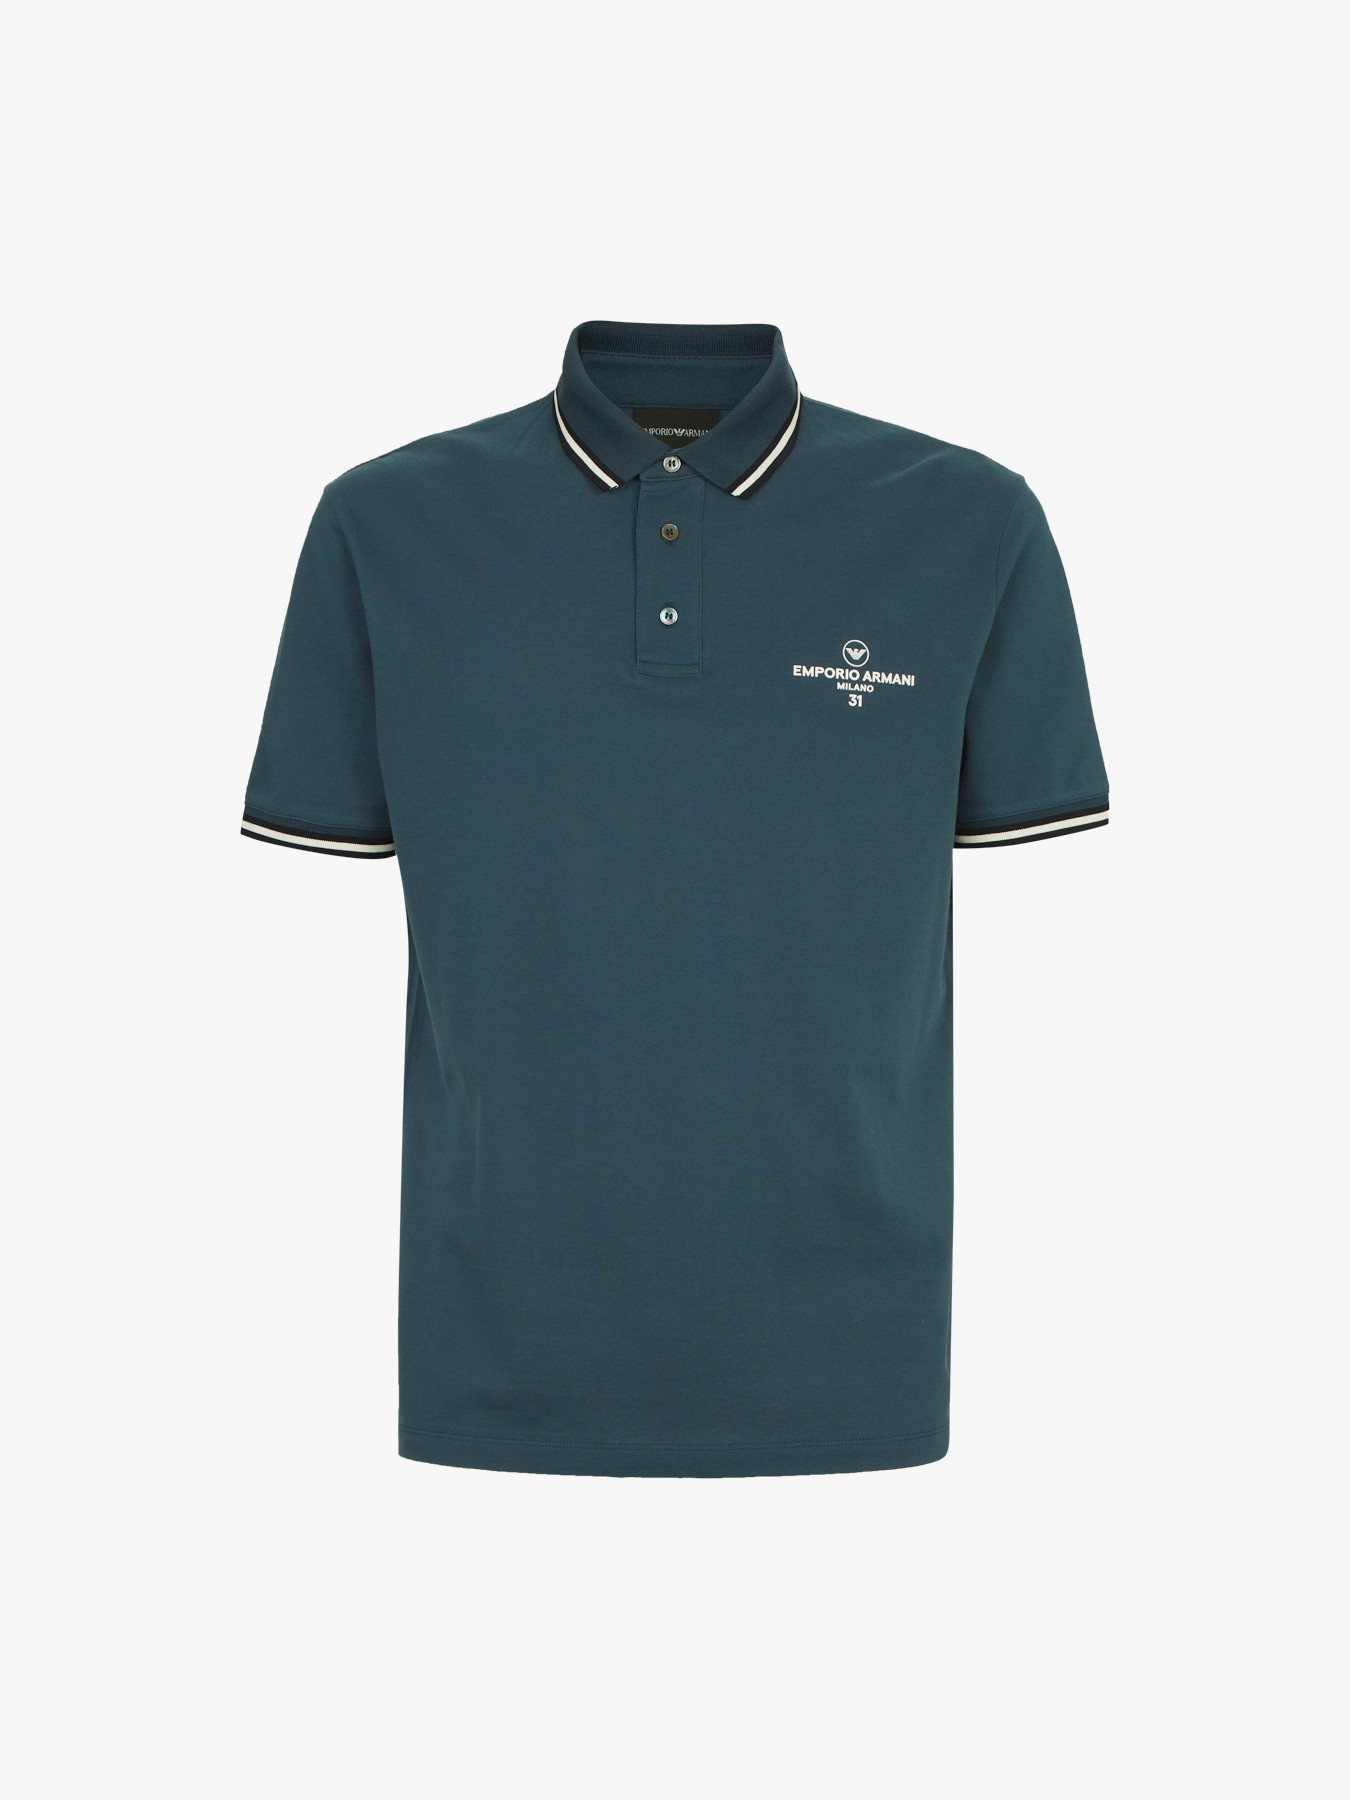 Emporio Armani Milano Polo Shirt | Polo Shirt | Fenwick